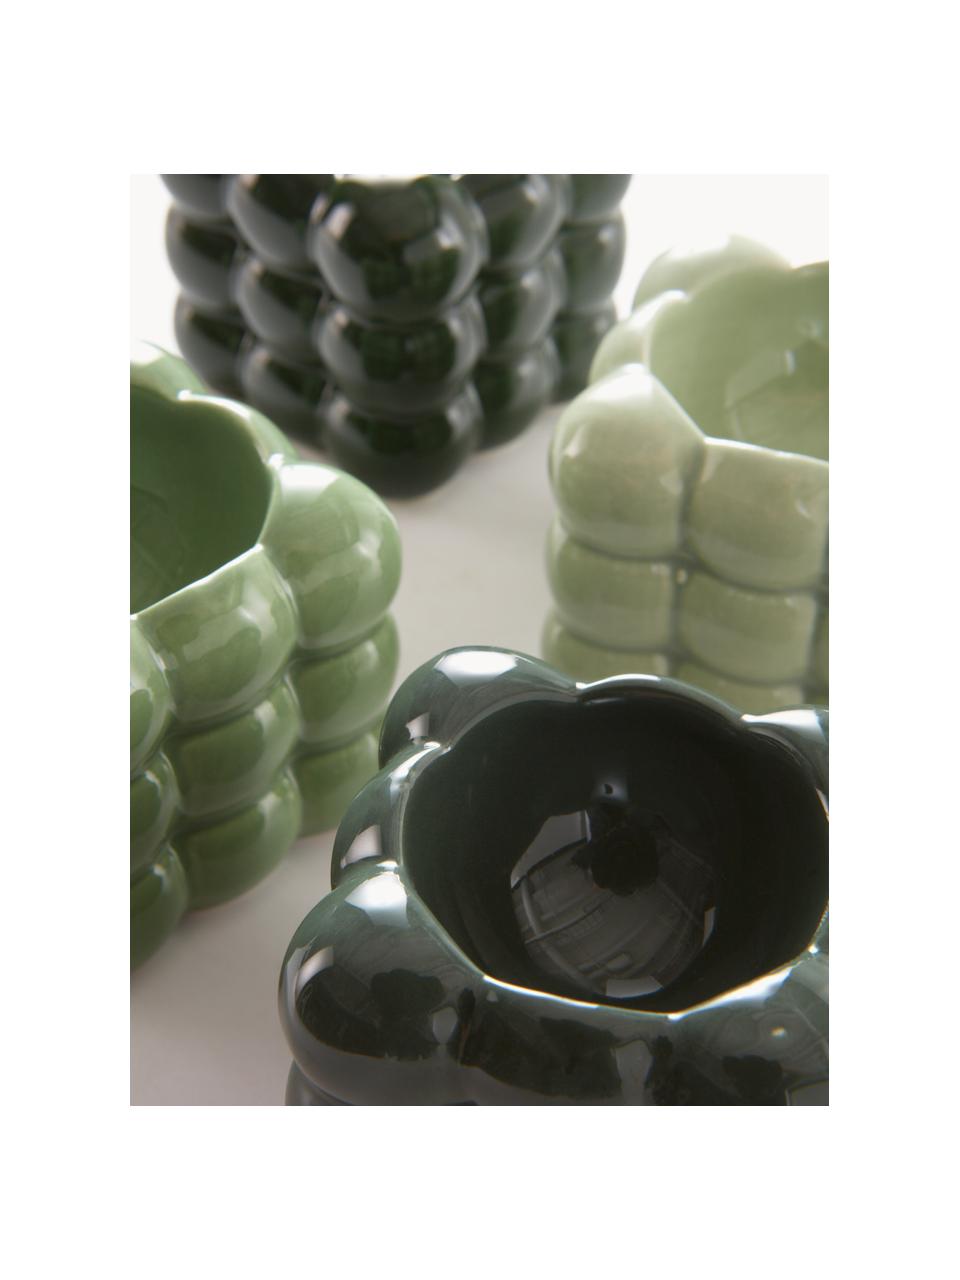 Coquetiers Bubbles, 4 élém., Porcelaine dolomitique, Tons verts, larg. 6 x haut. 6 cm